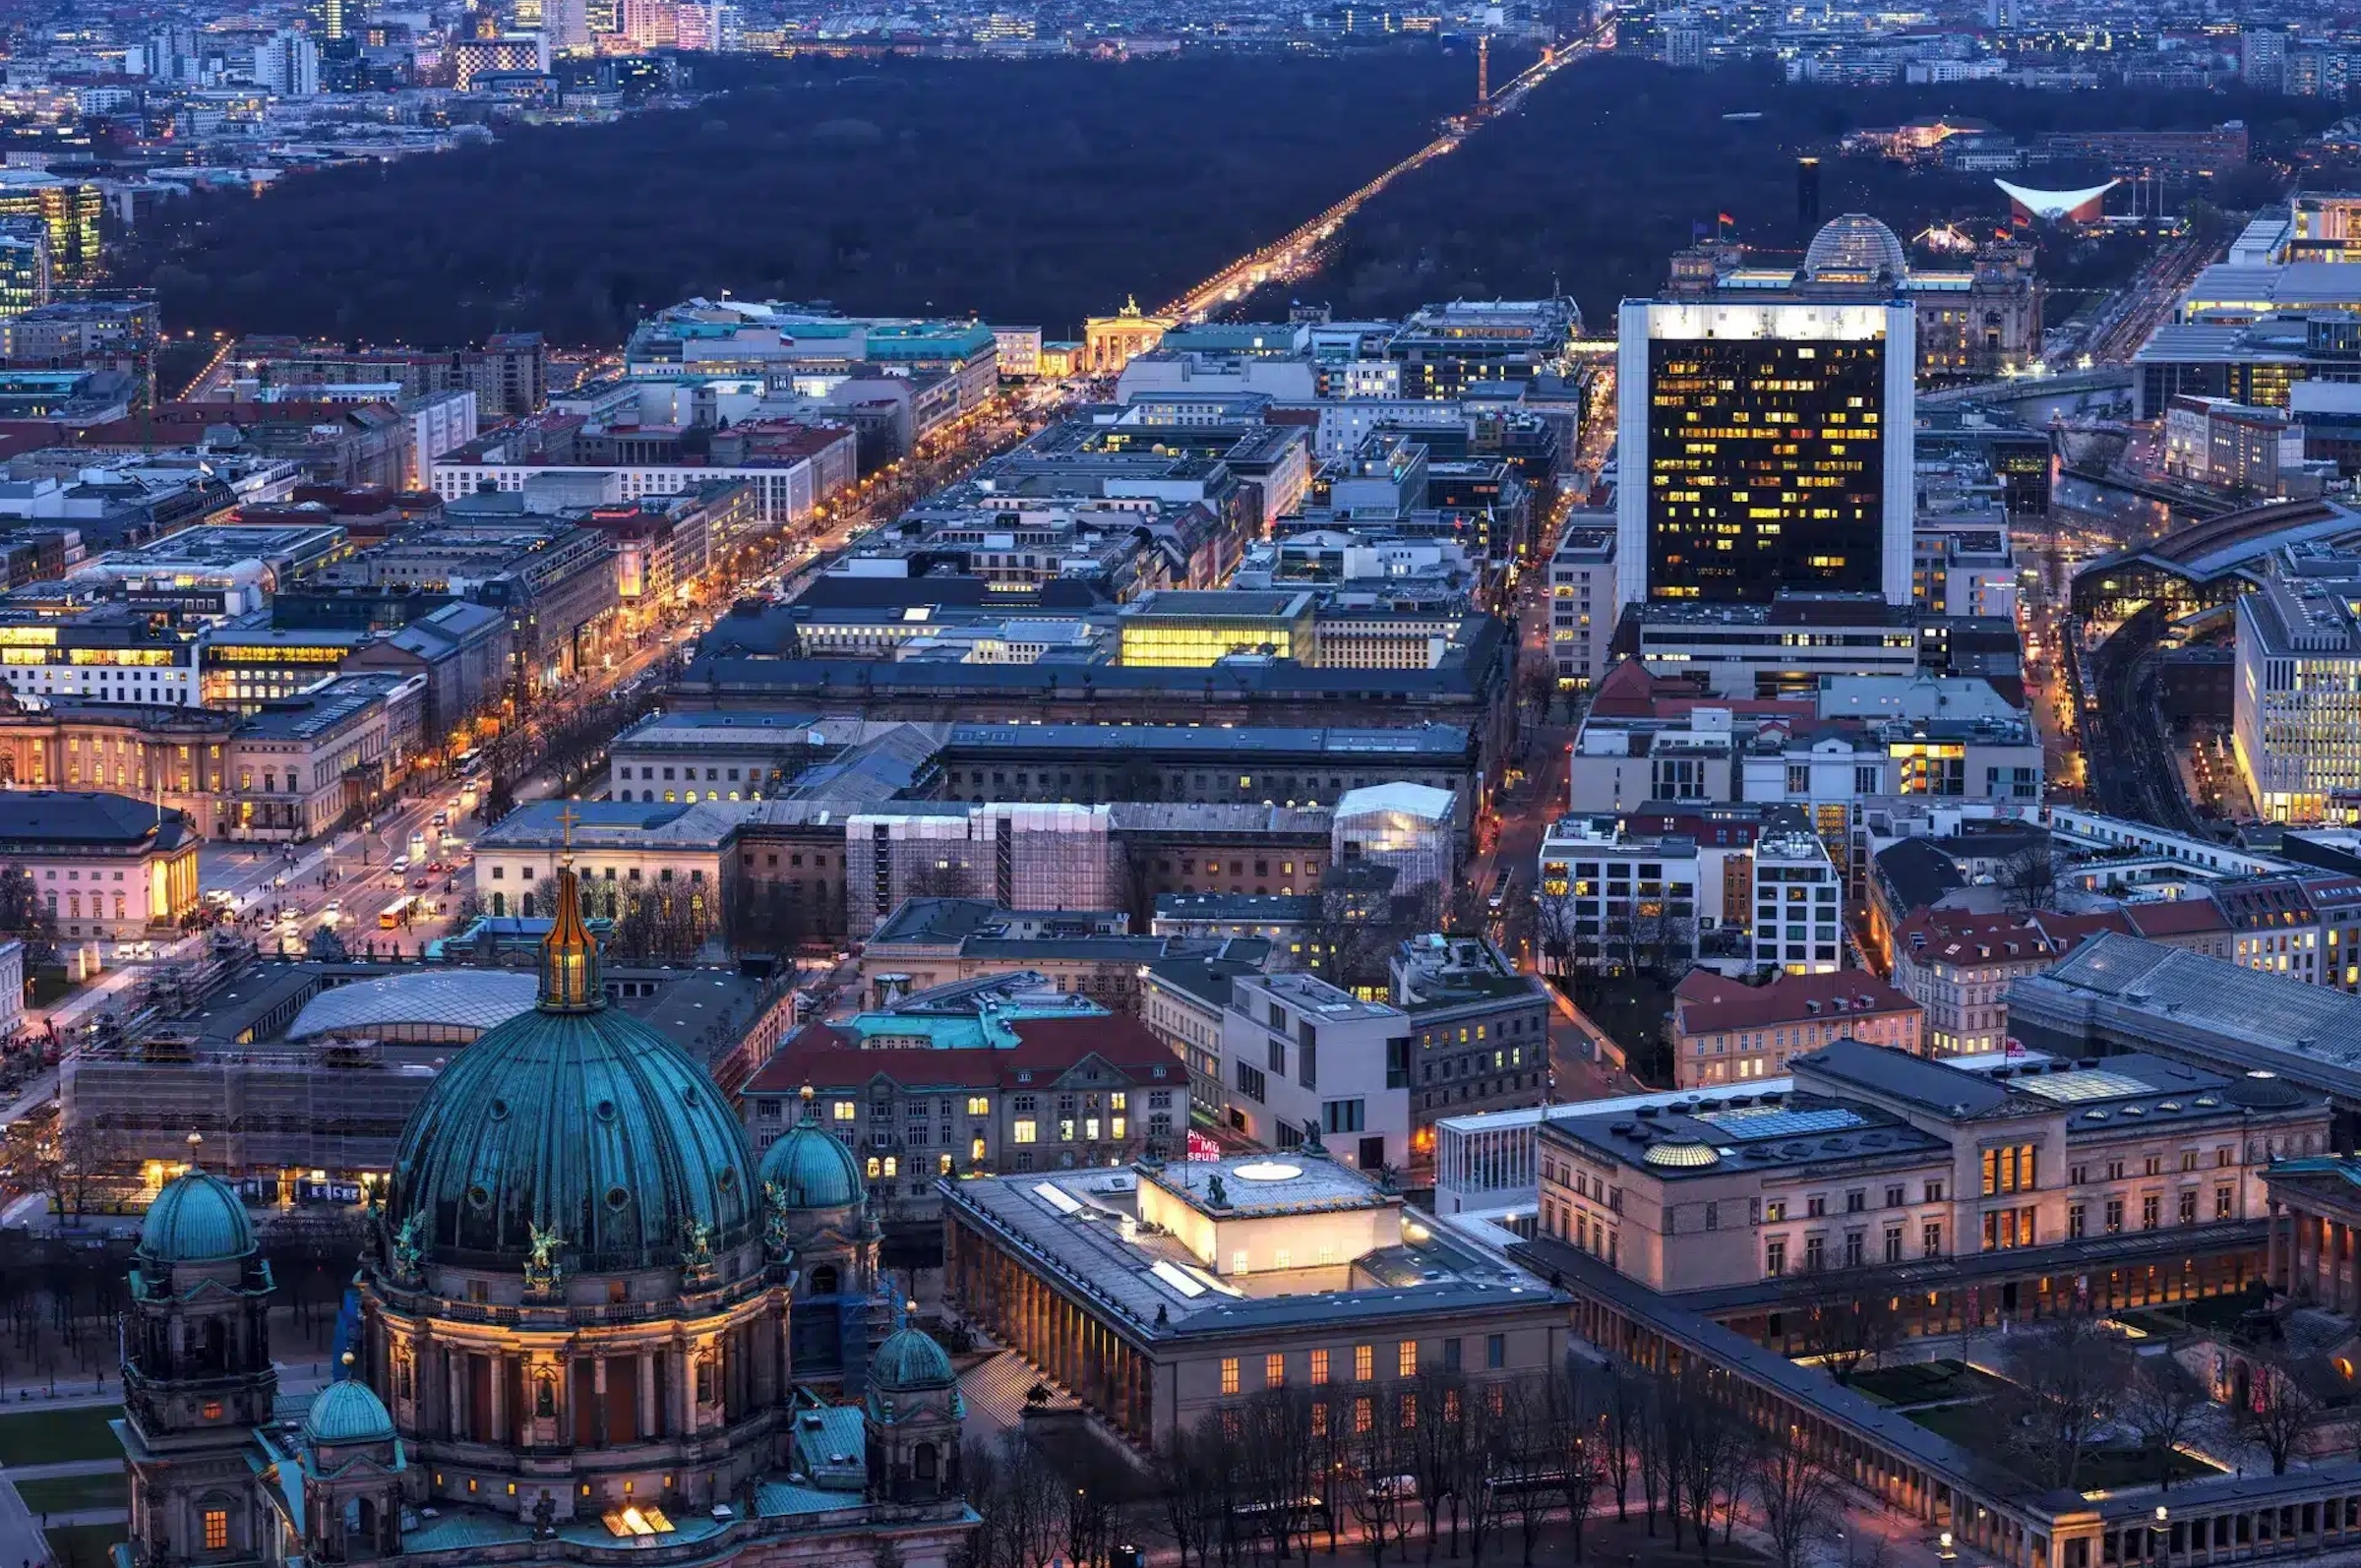 Torre de TV (Berliner Fernsehturm)